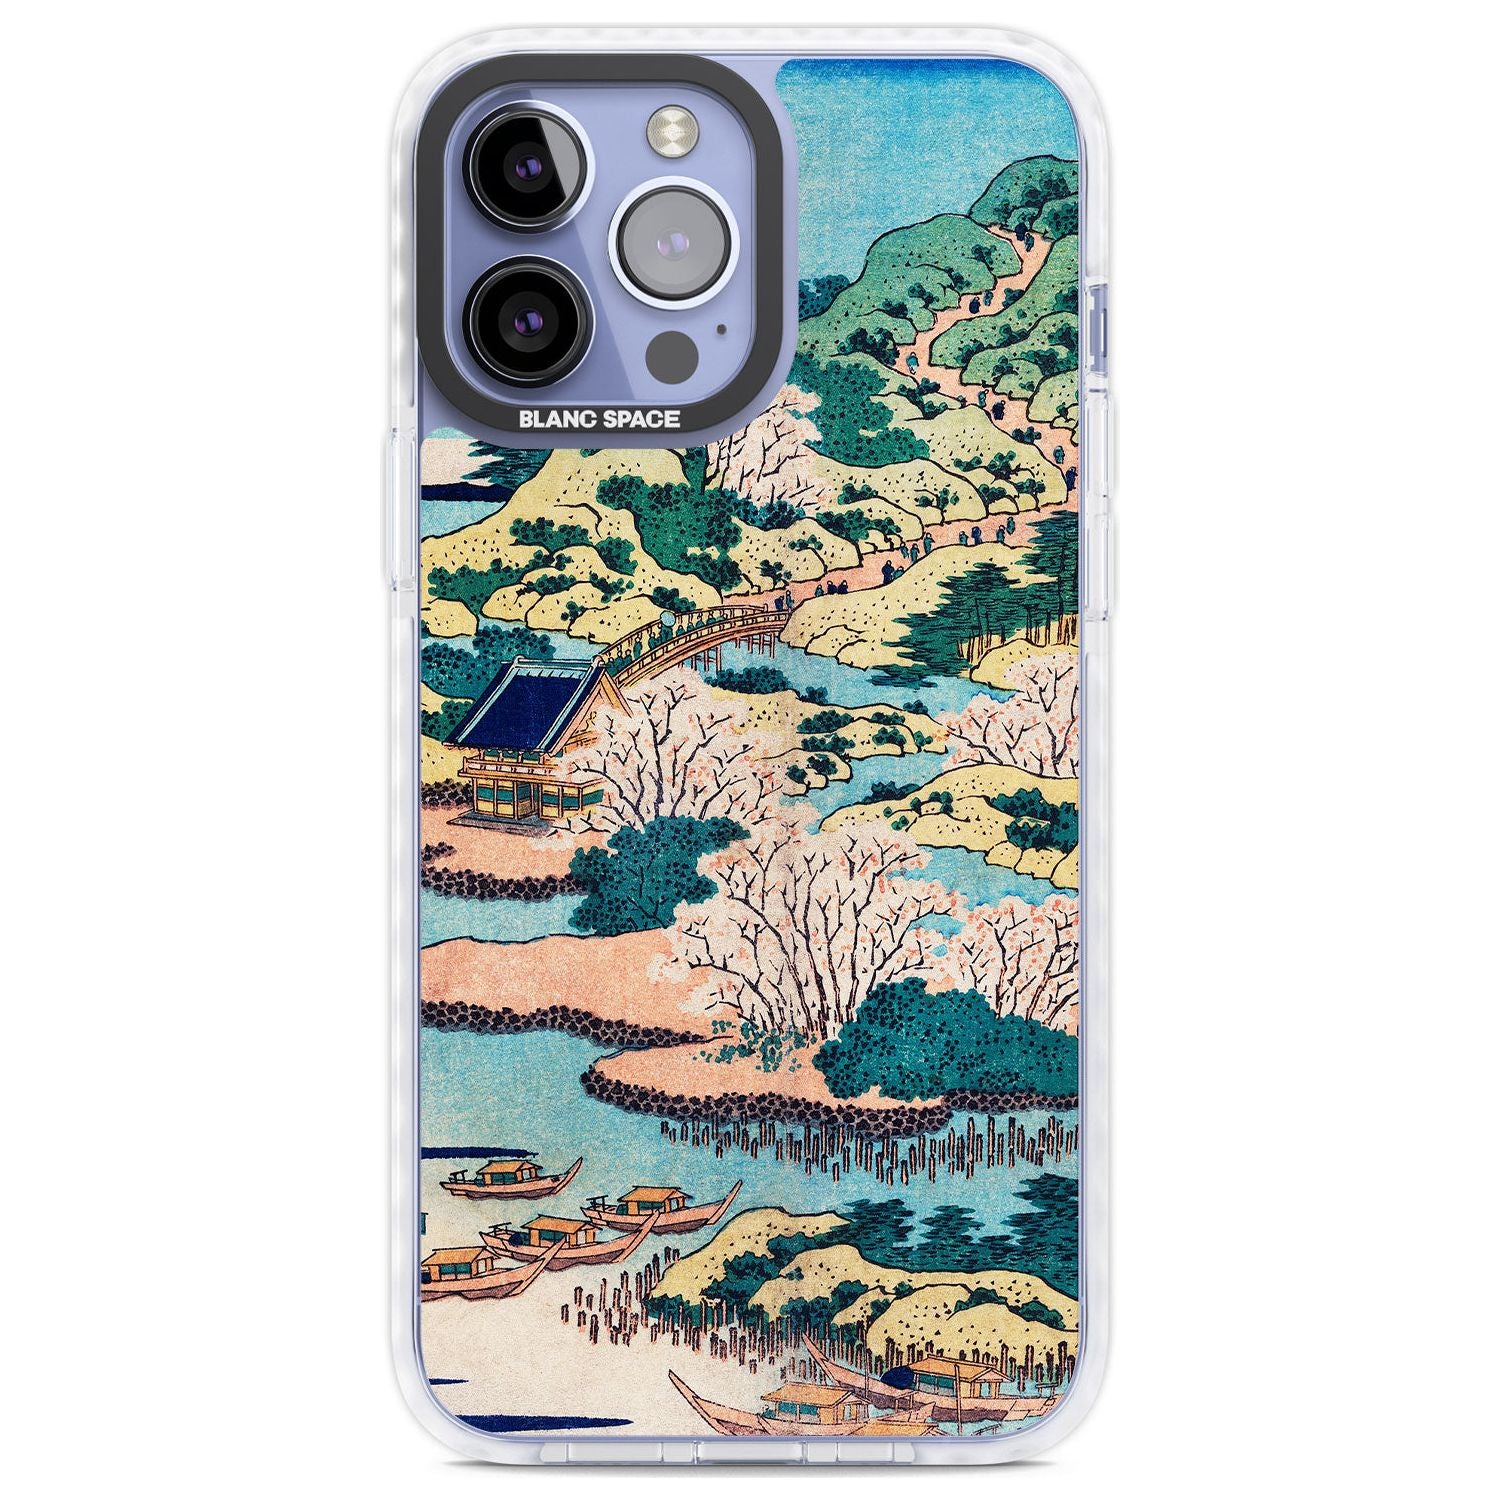 Coastal Community by Katsushika Hokusai Phone Case iPhone 13 Pro Max / Impact Case,iPhone 14 Pro Max / Impact Case Blanc Space